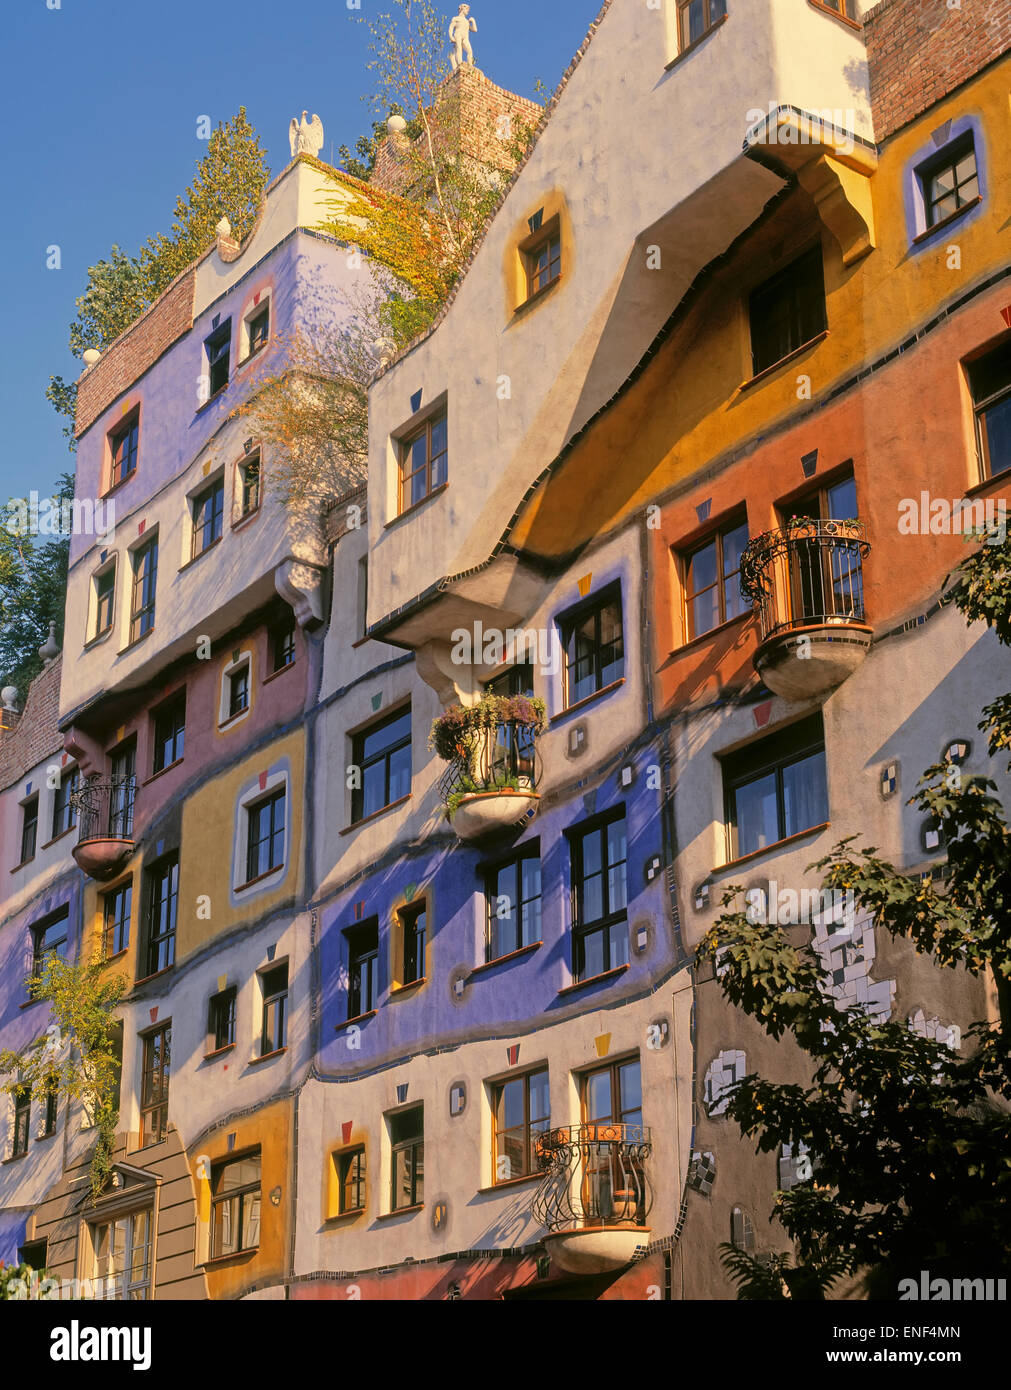 Vienne, Autriche. Façade de Hundertwasserhaus, un immeuble conçu par l'architecte et artiste Friedensreich Hundertwasser. Banque D'Images